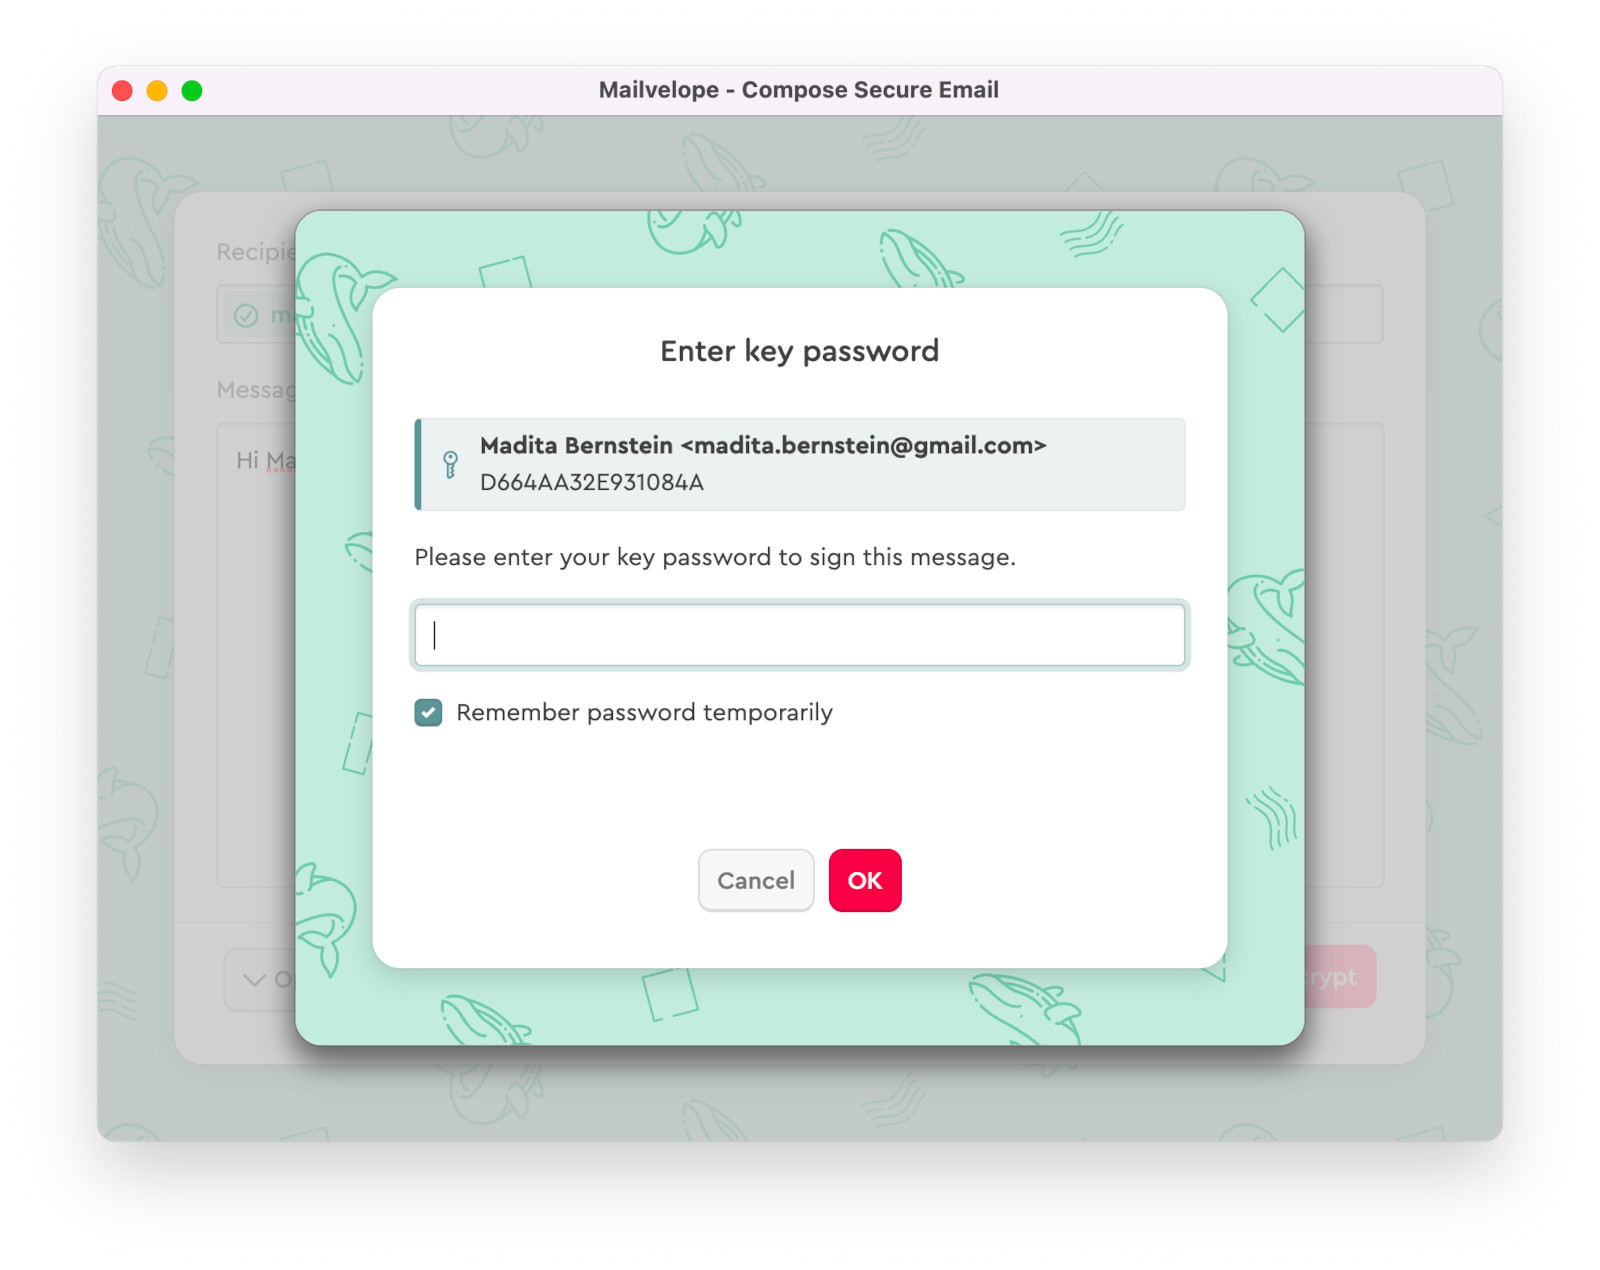 Mailvelope solicita la contraseña para firmar el mensaje encriptado en Outlook.com